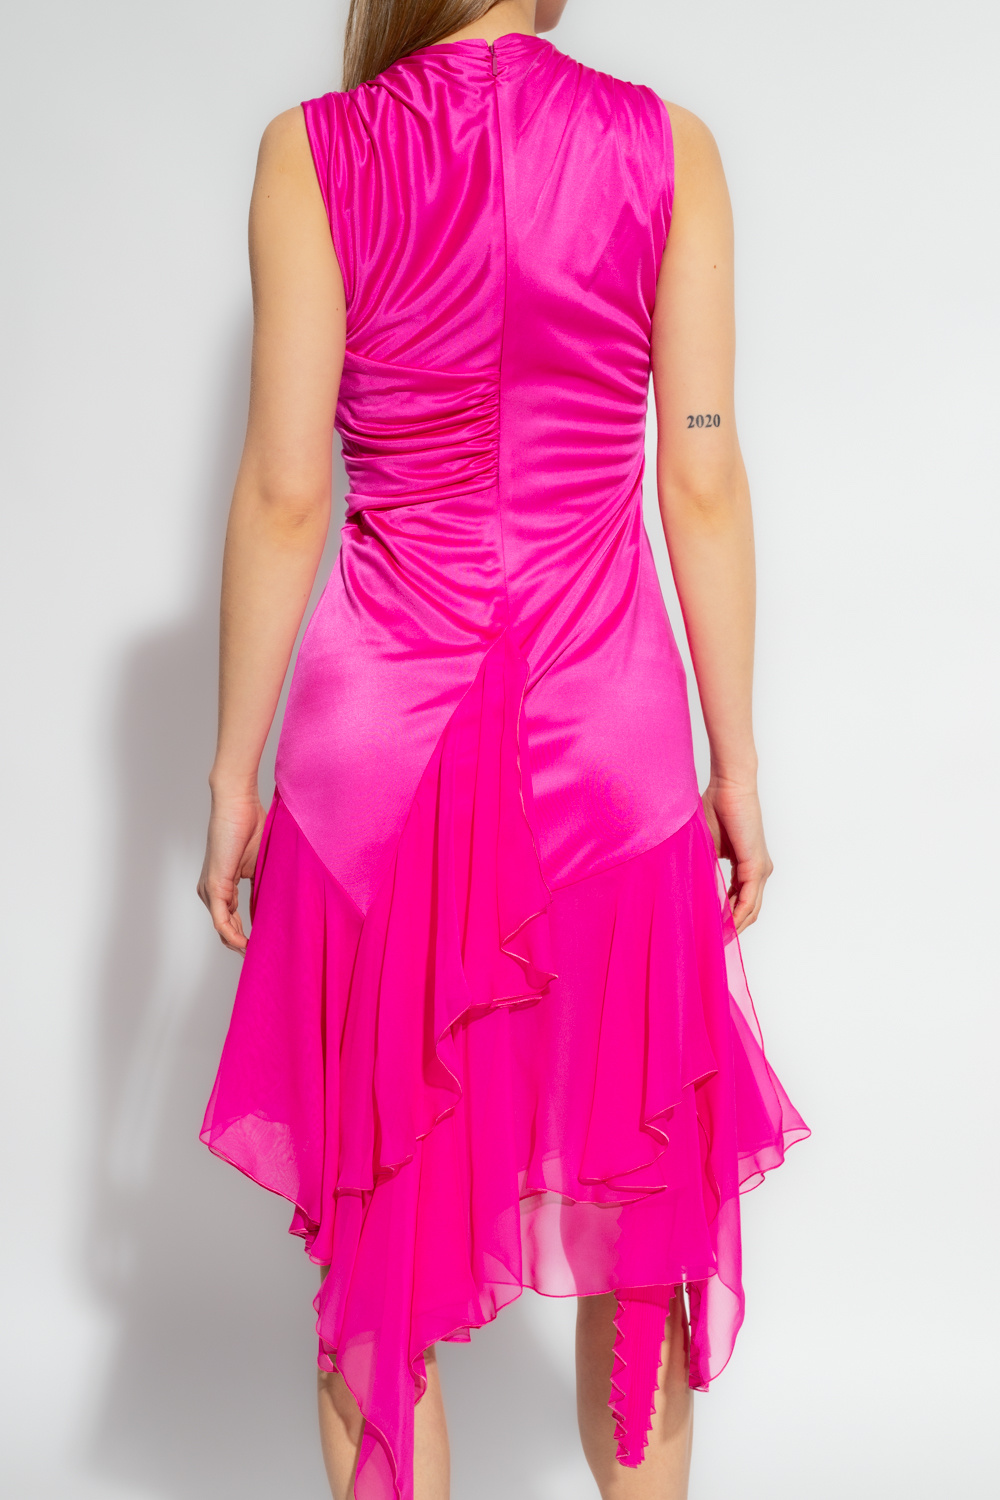 GenesinlifeShops GB - Lace Panel Bardot Maxi Dress - Pink Sleeveless dress  Versace